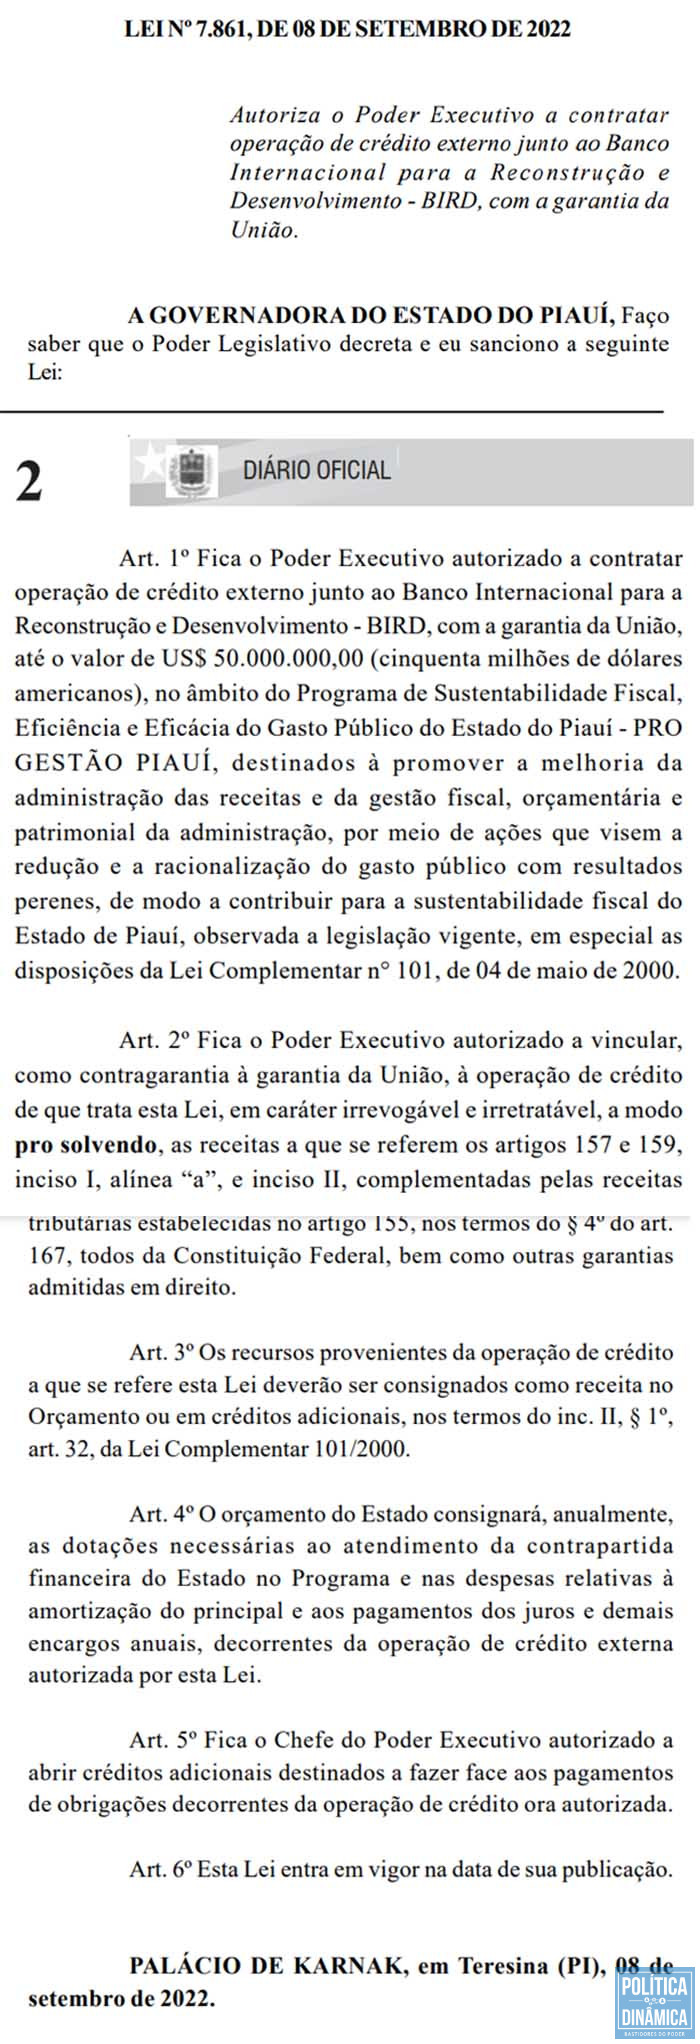 Empréstimo milionário terá ainda como garantia a União, que fica como avaliador em caso de calote do Estado (foto: reprodução Diário Oficial do Piauí)